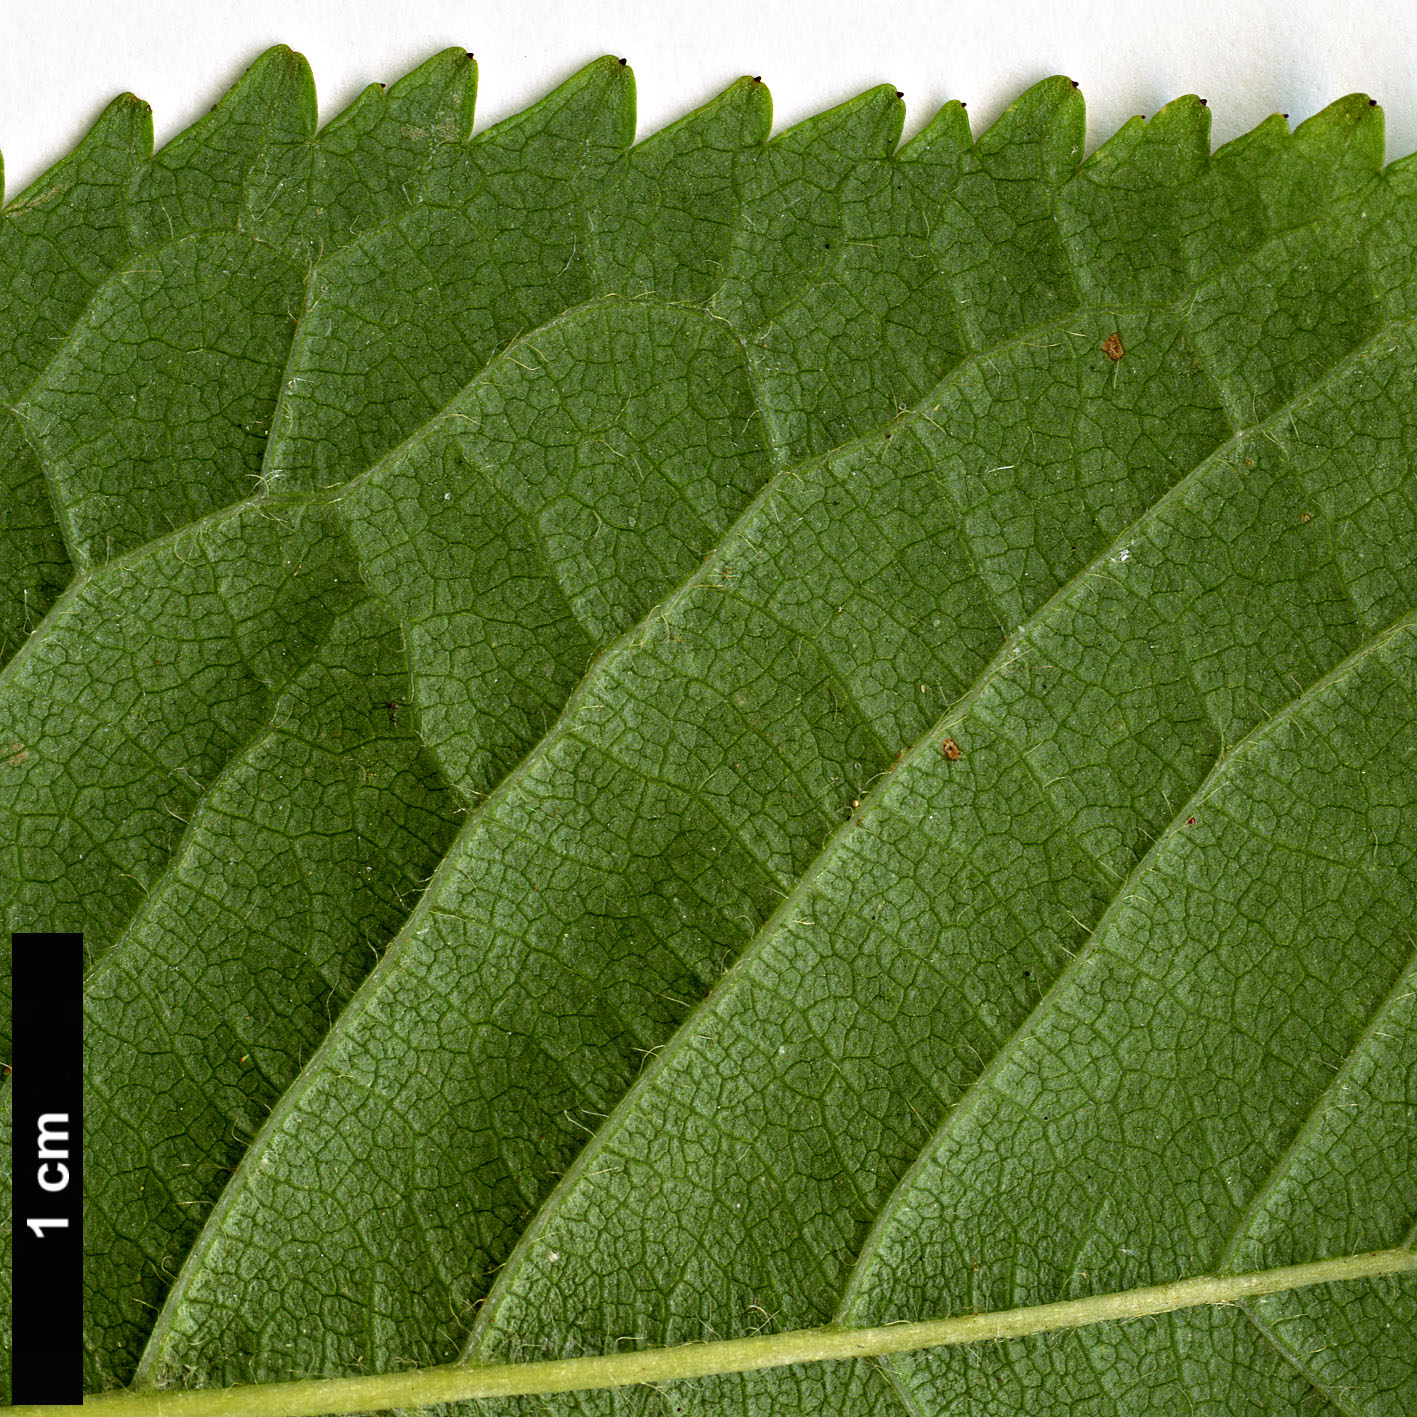 High resolution image: Family: Rosaceae - Genus: Prunus - Taxon: avium